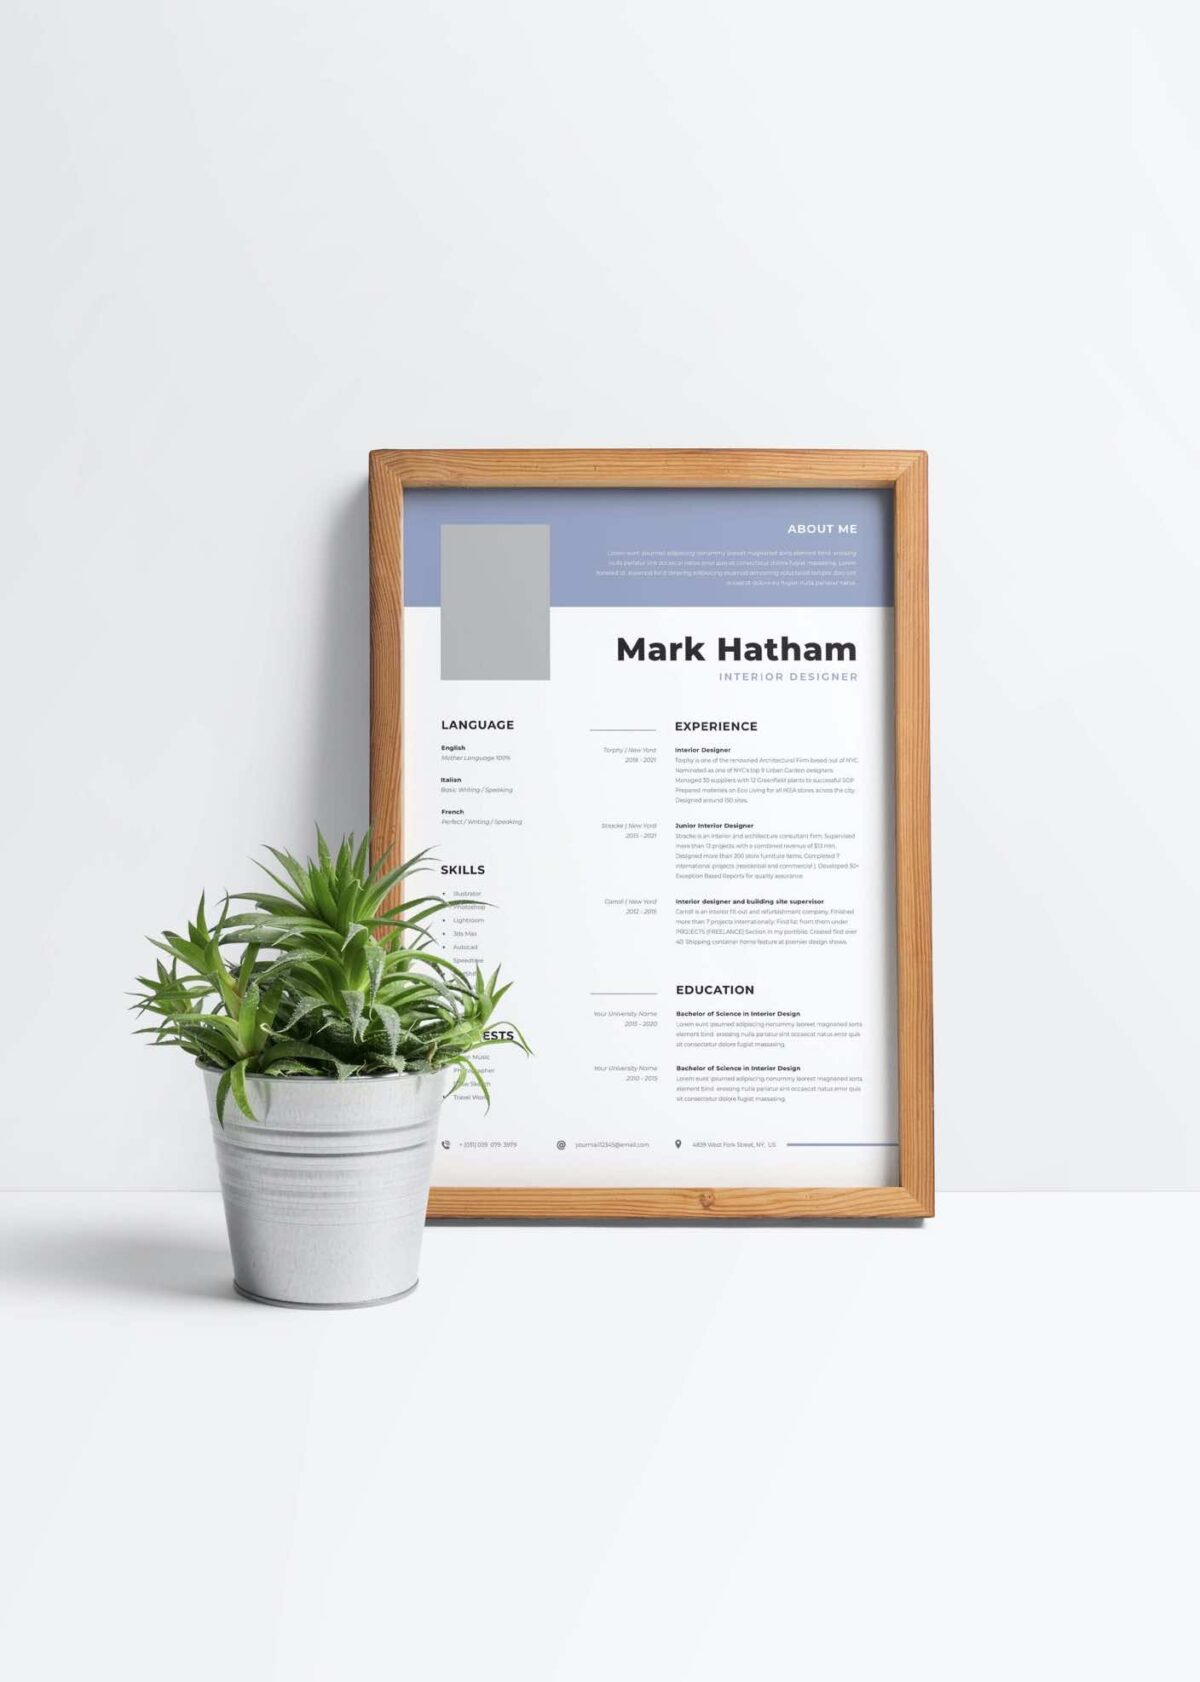 CV #12 Mark Hatham